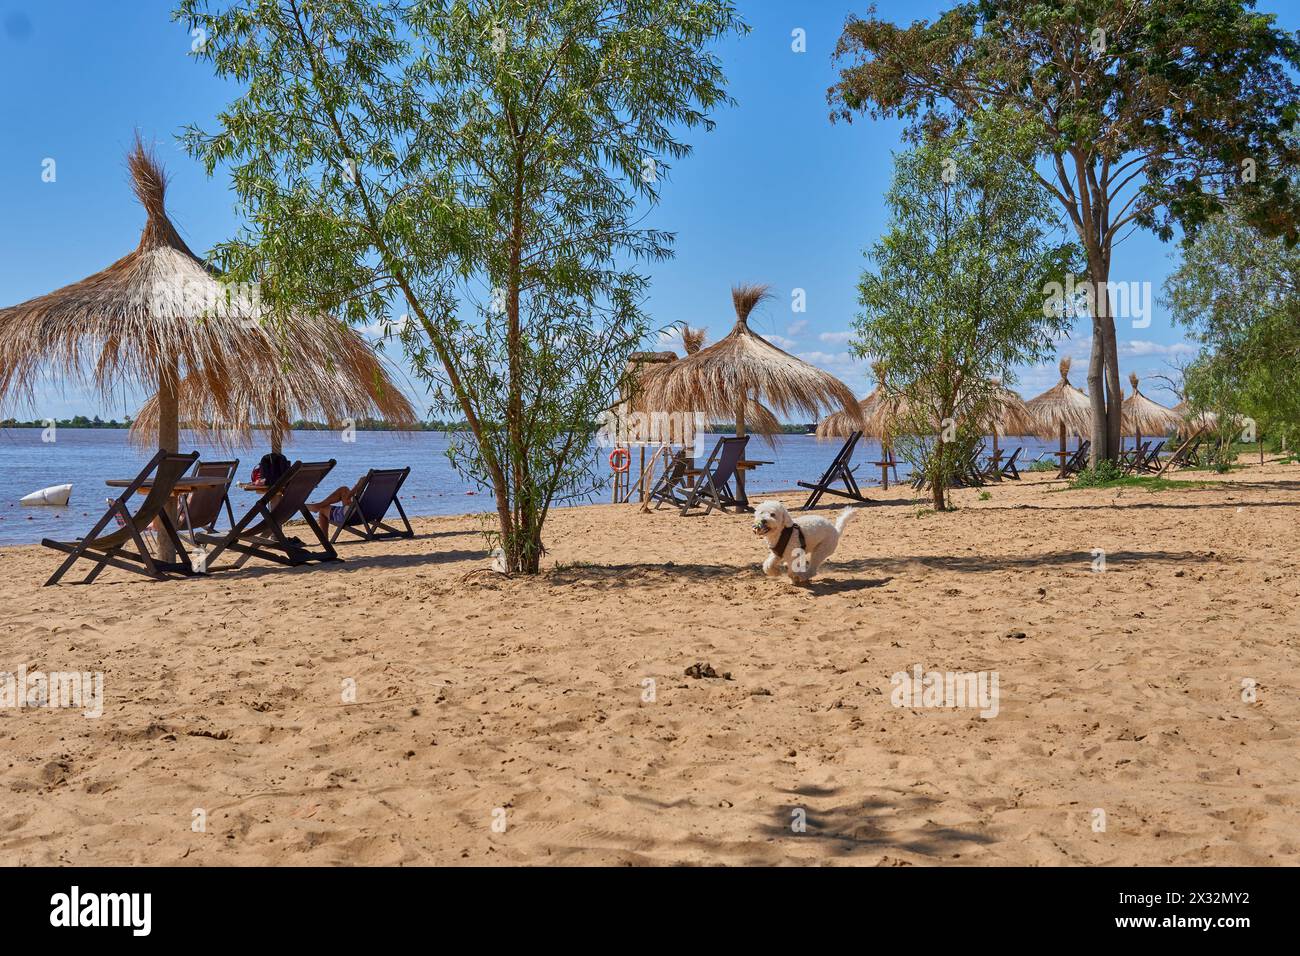 poodle - Dog Running, che gioca sulla spiaggia con ombrelloni di paglia e sdraio in legno in una giornata di sole. Foto Stock